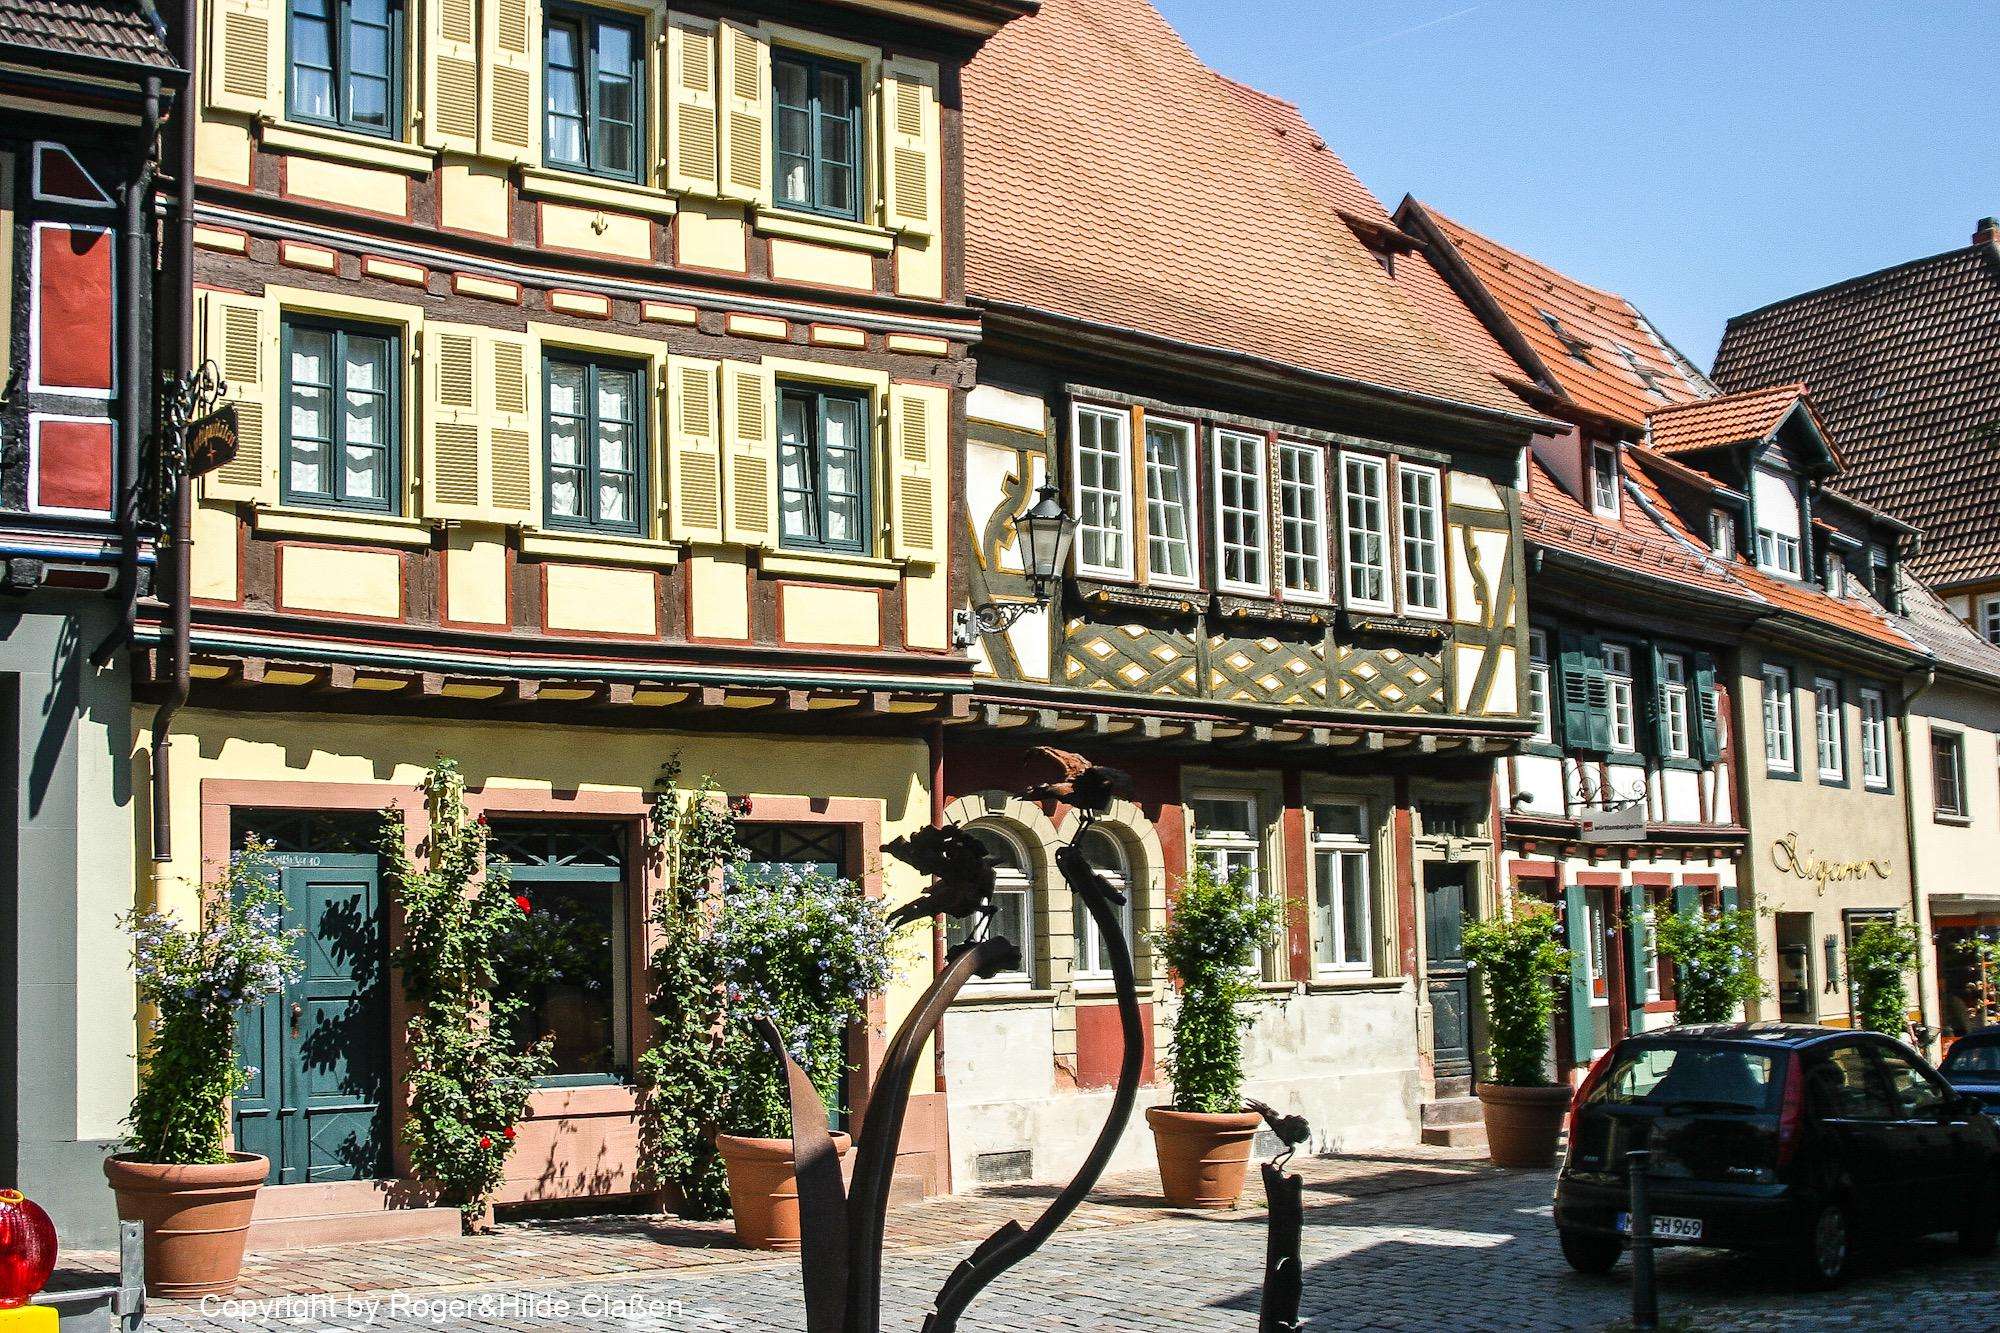 Dieses Gebäude, Baujahr 1598, trägt den Namen Sackpfeife und befindet sich in der Altstadt von Ladenburg. Ehemaliger Sitz der jüdischen Gemeinde, dann ein Weinlokal, dann Heimatmuseum. Aktuell ein privates Wohnhaus.